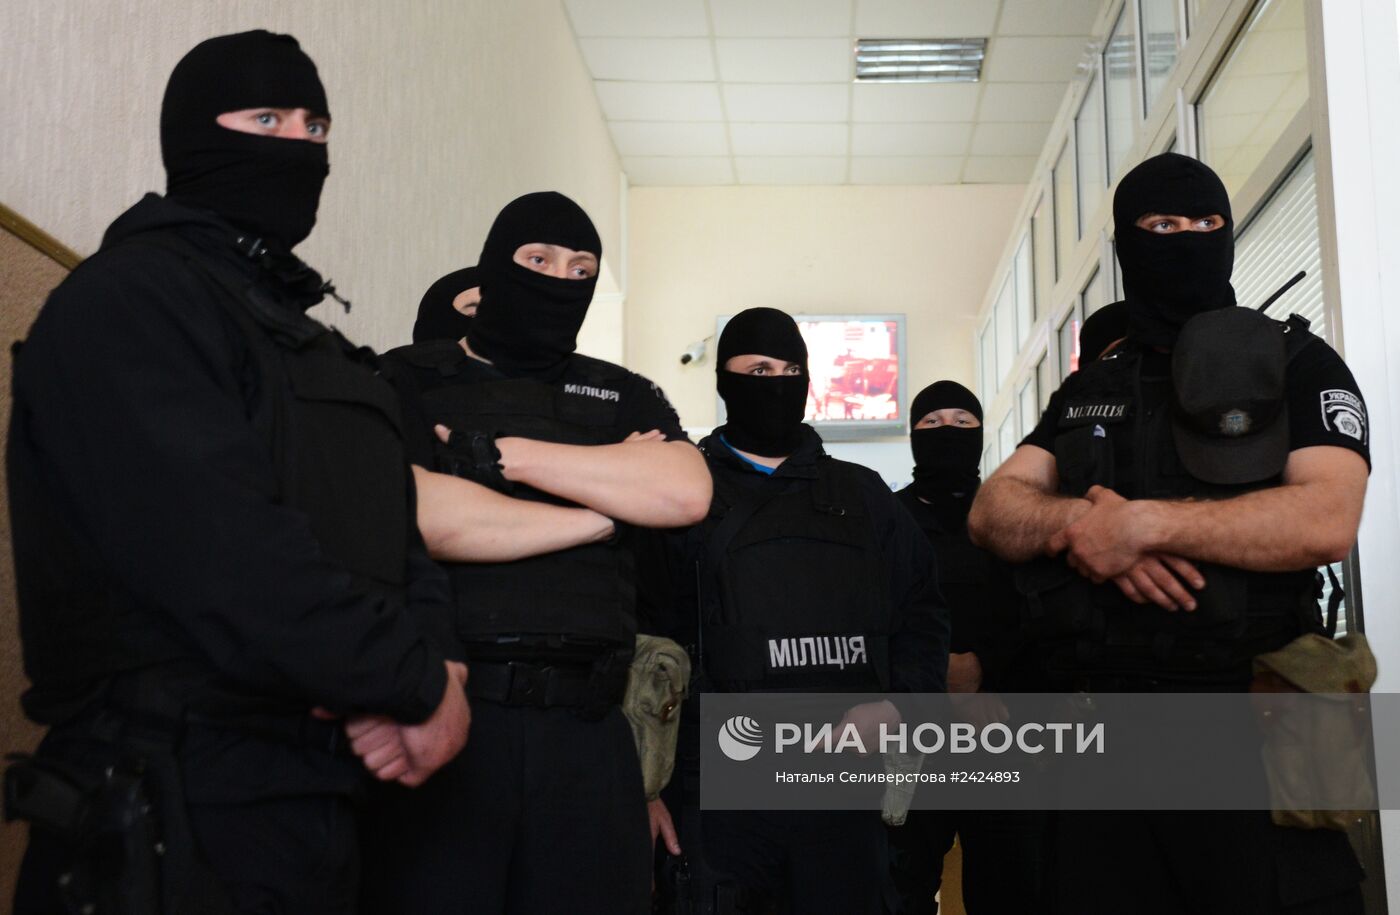 Сторонники федерализации взяли под контроль телеканал "Донбасс" в Донецке